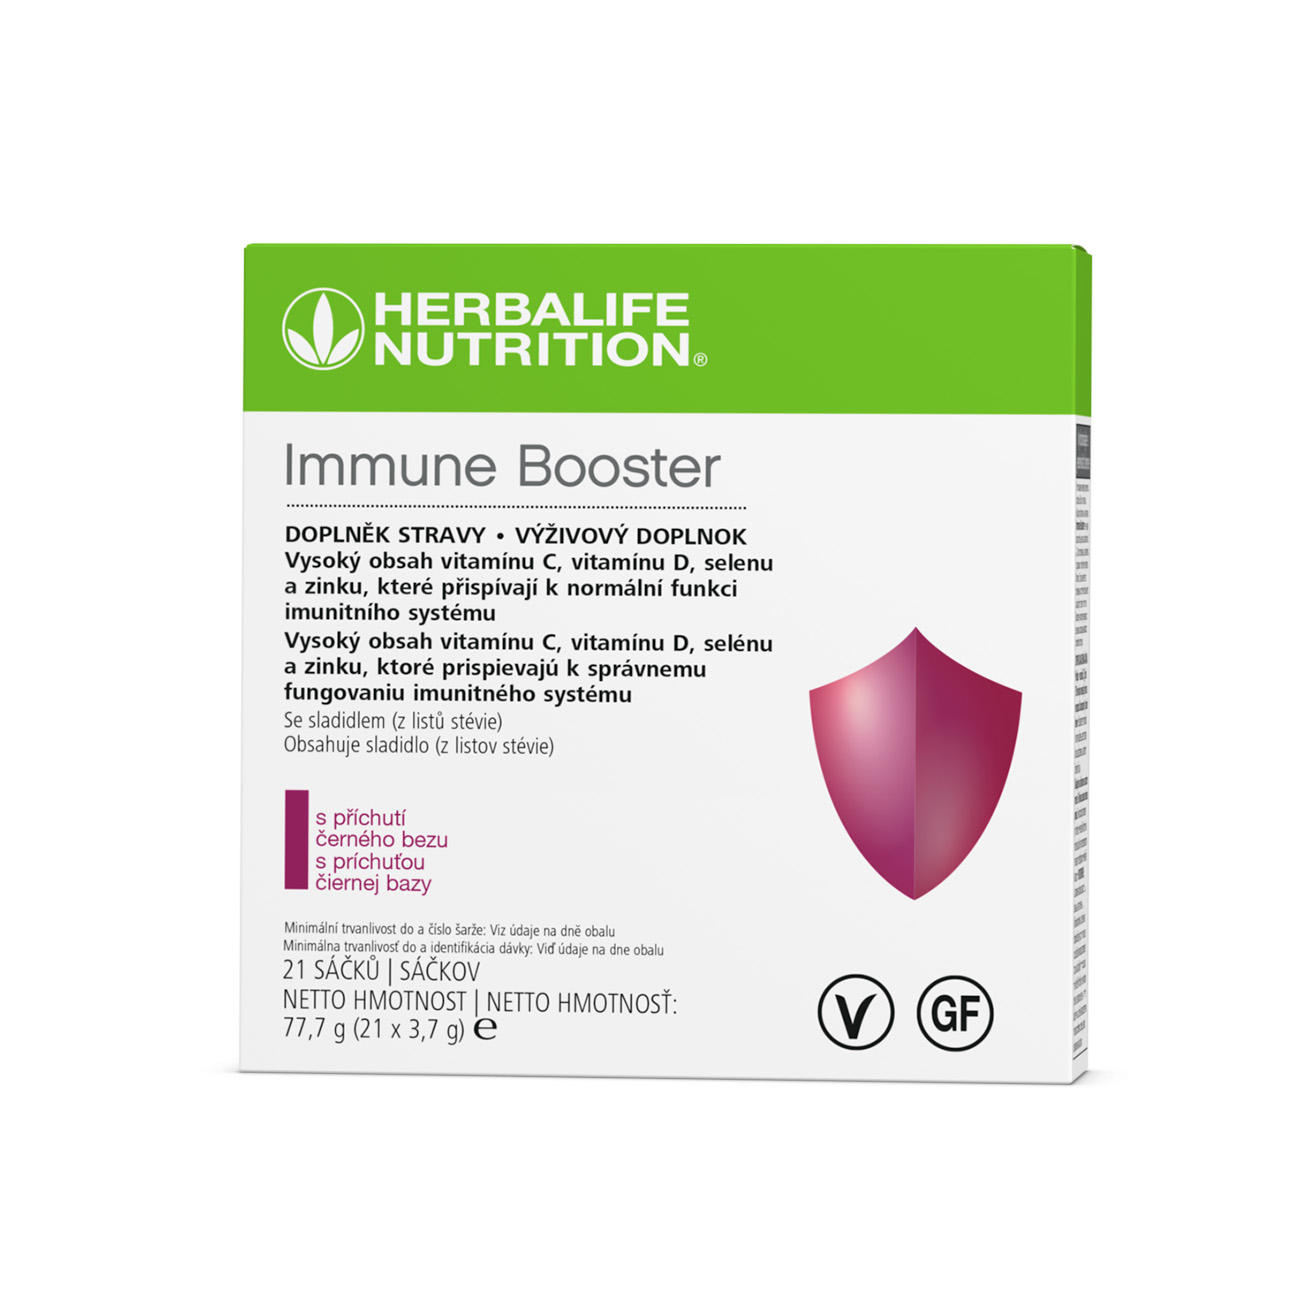 Immune Booster, ktorý obsahuje EpiCor® a vysoký obsah kľúčových vitamínov a minerálov, je skvelý spôsob, ako sa postarať o svoj imunitný systém, keď ste na cestách.